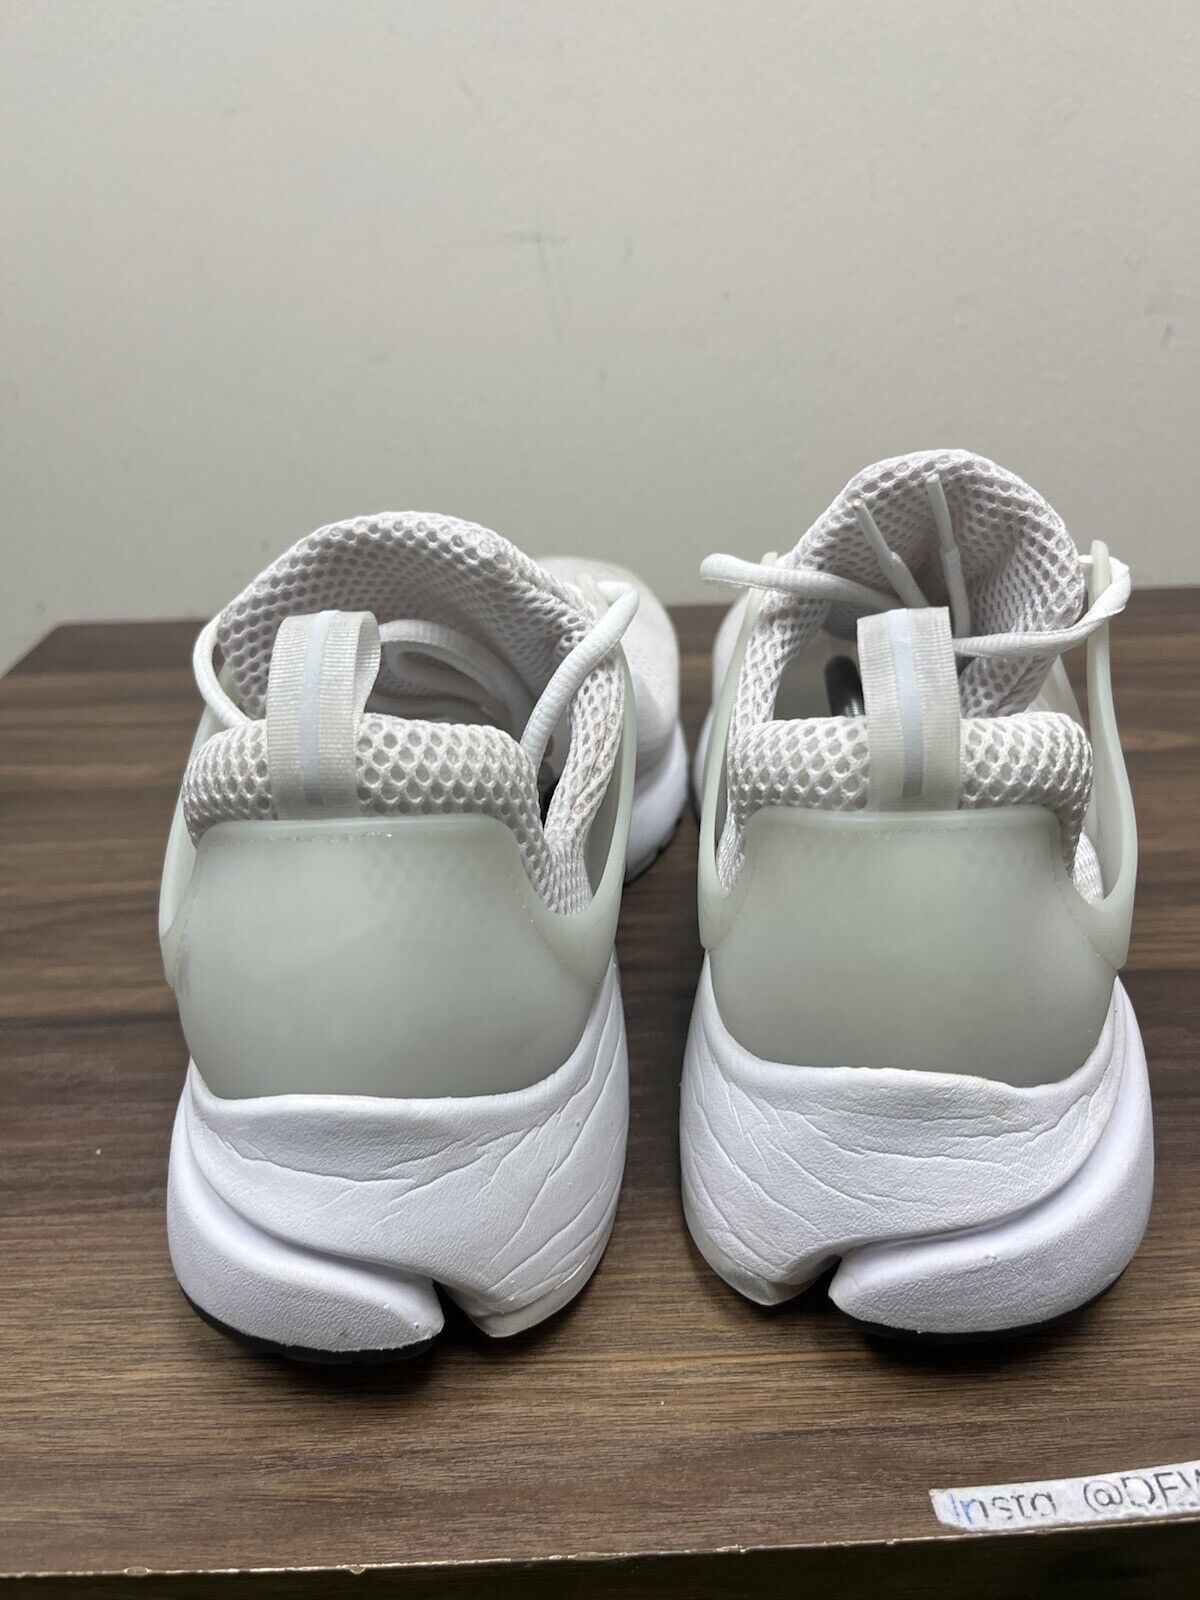 Size 13 - Nike Air Presto Triple White 2016